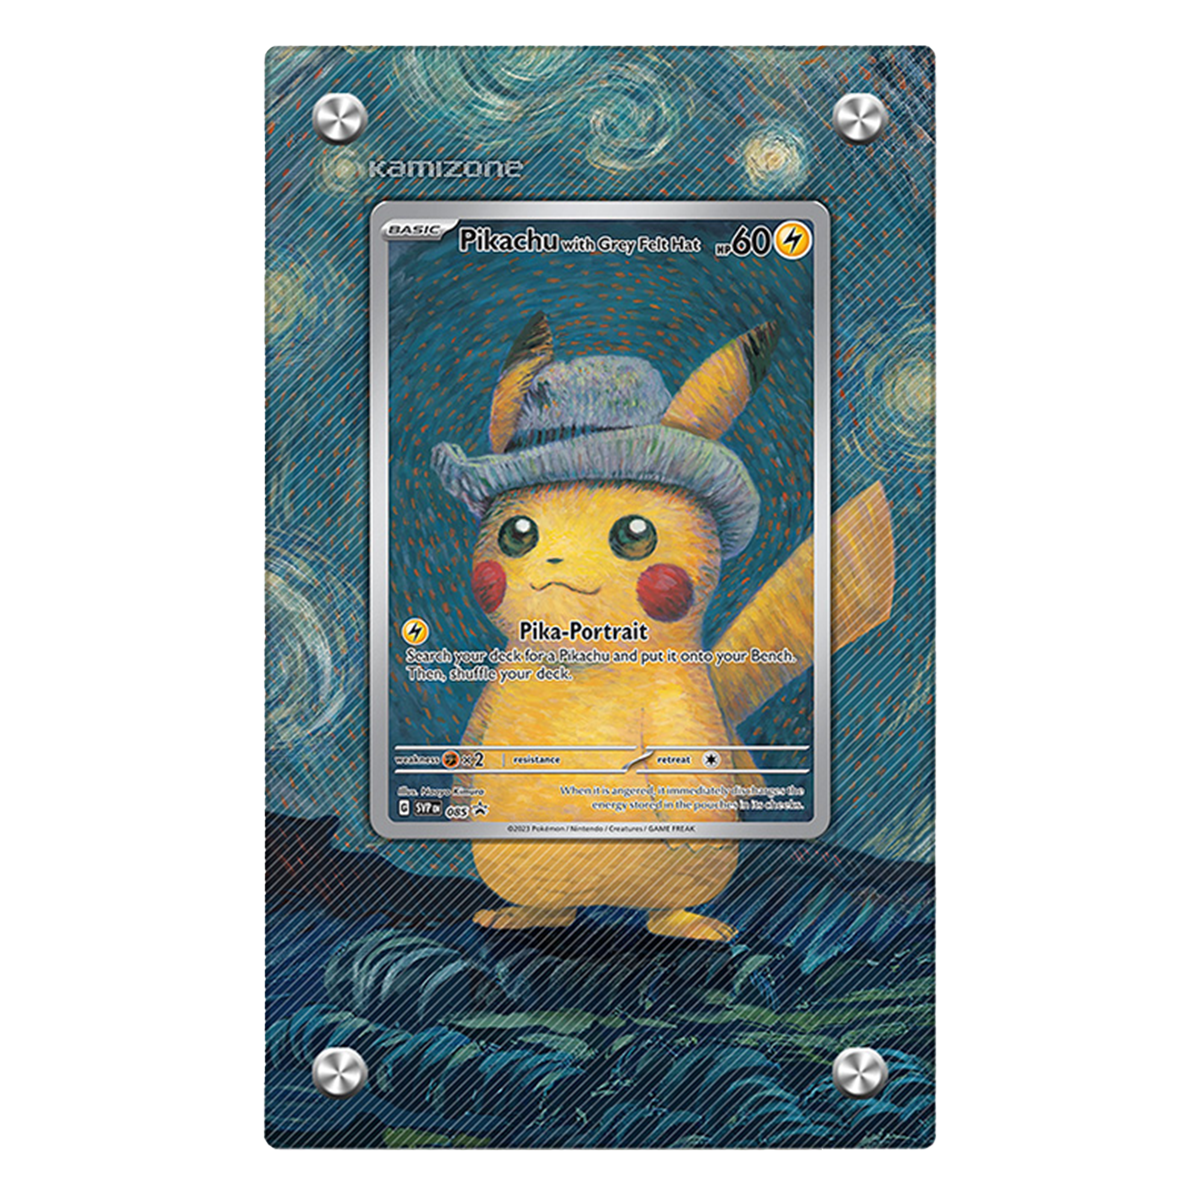 Pikachu Grey Felt Hat Promo- Extended Artwork Display Case for 